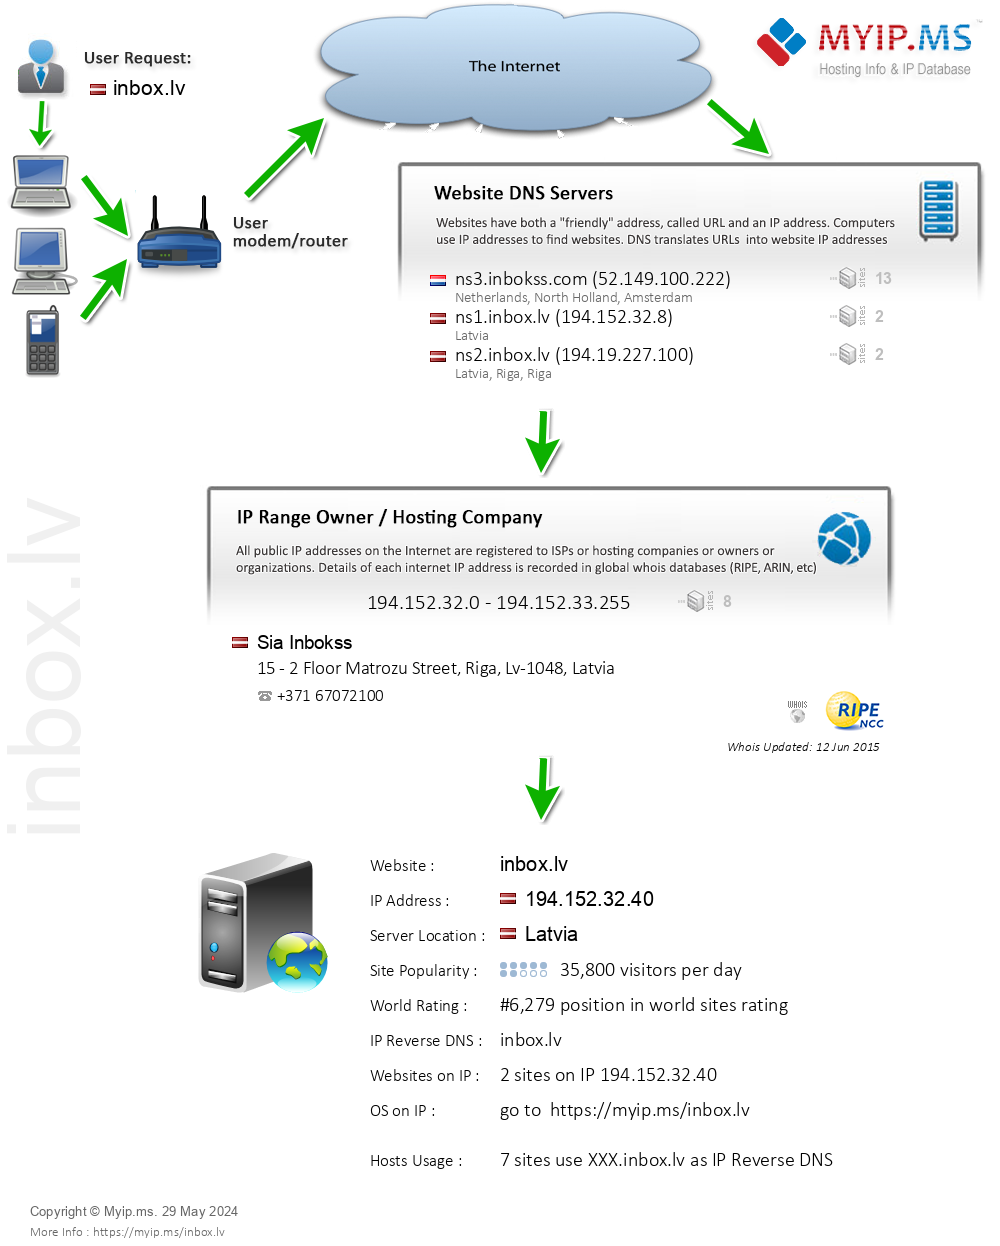 Inbox.lv - Website Hosting Visual IP Diagram